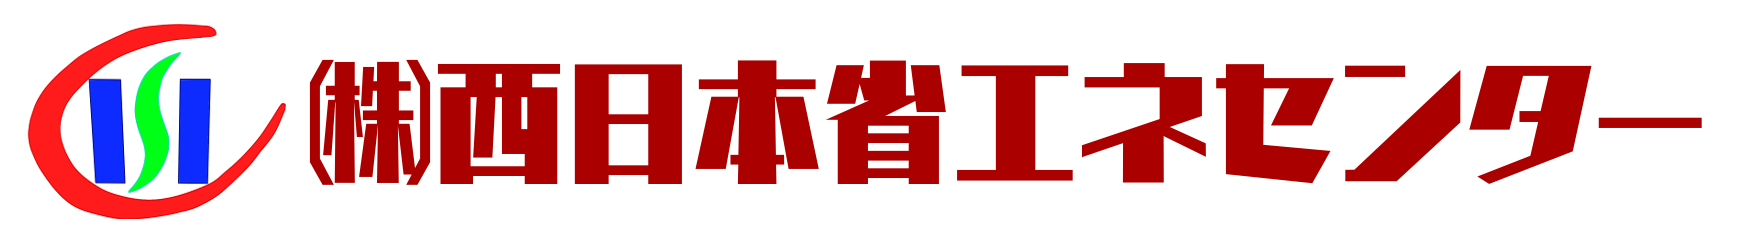 株式会社西日本省エネセンターのロゴ